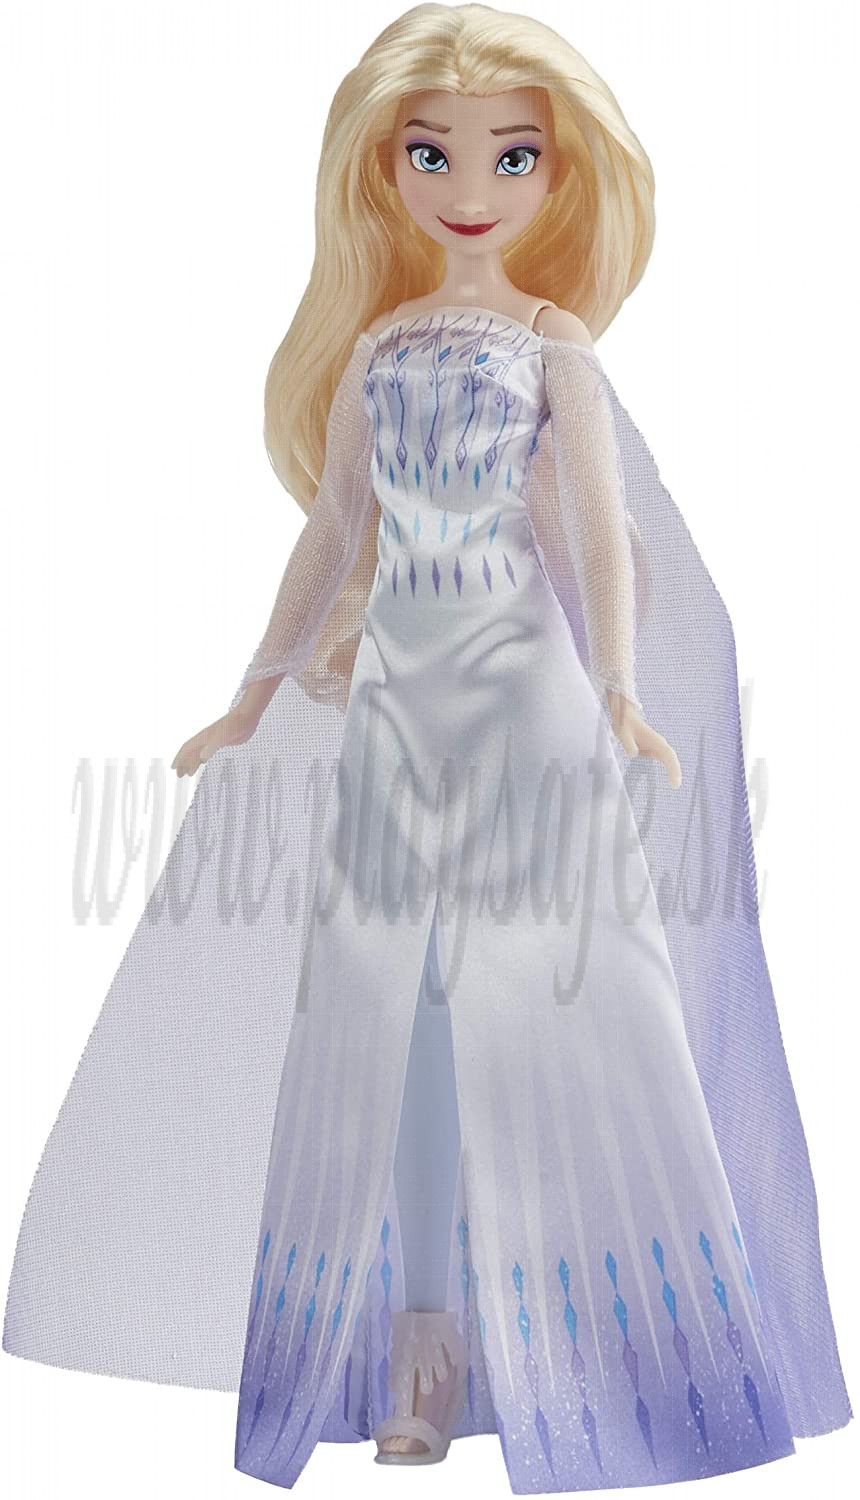 Hasbro Frozen II Snow Queen Elsa Doll, 29cm